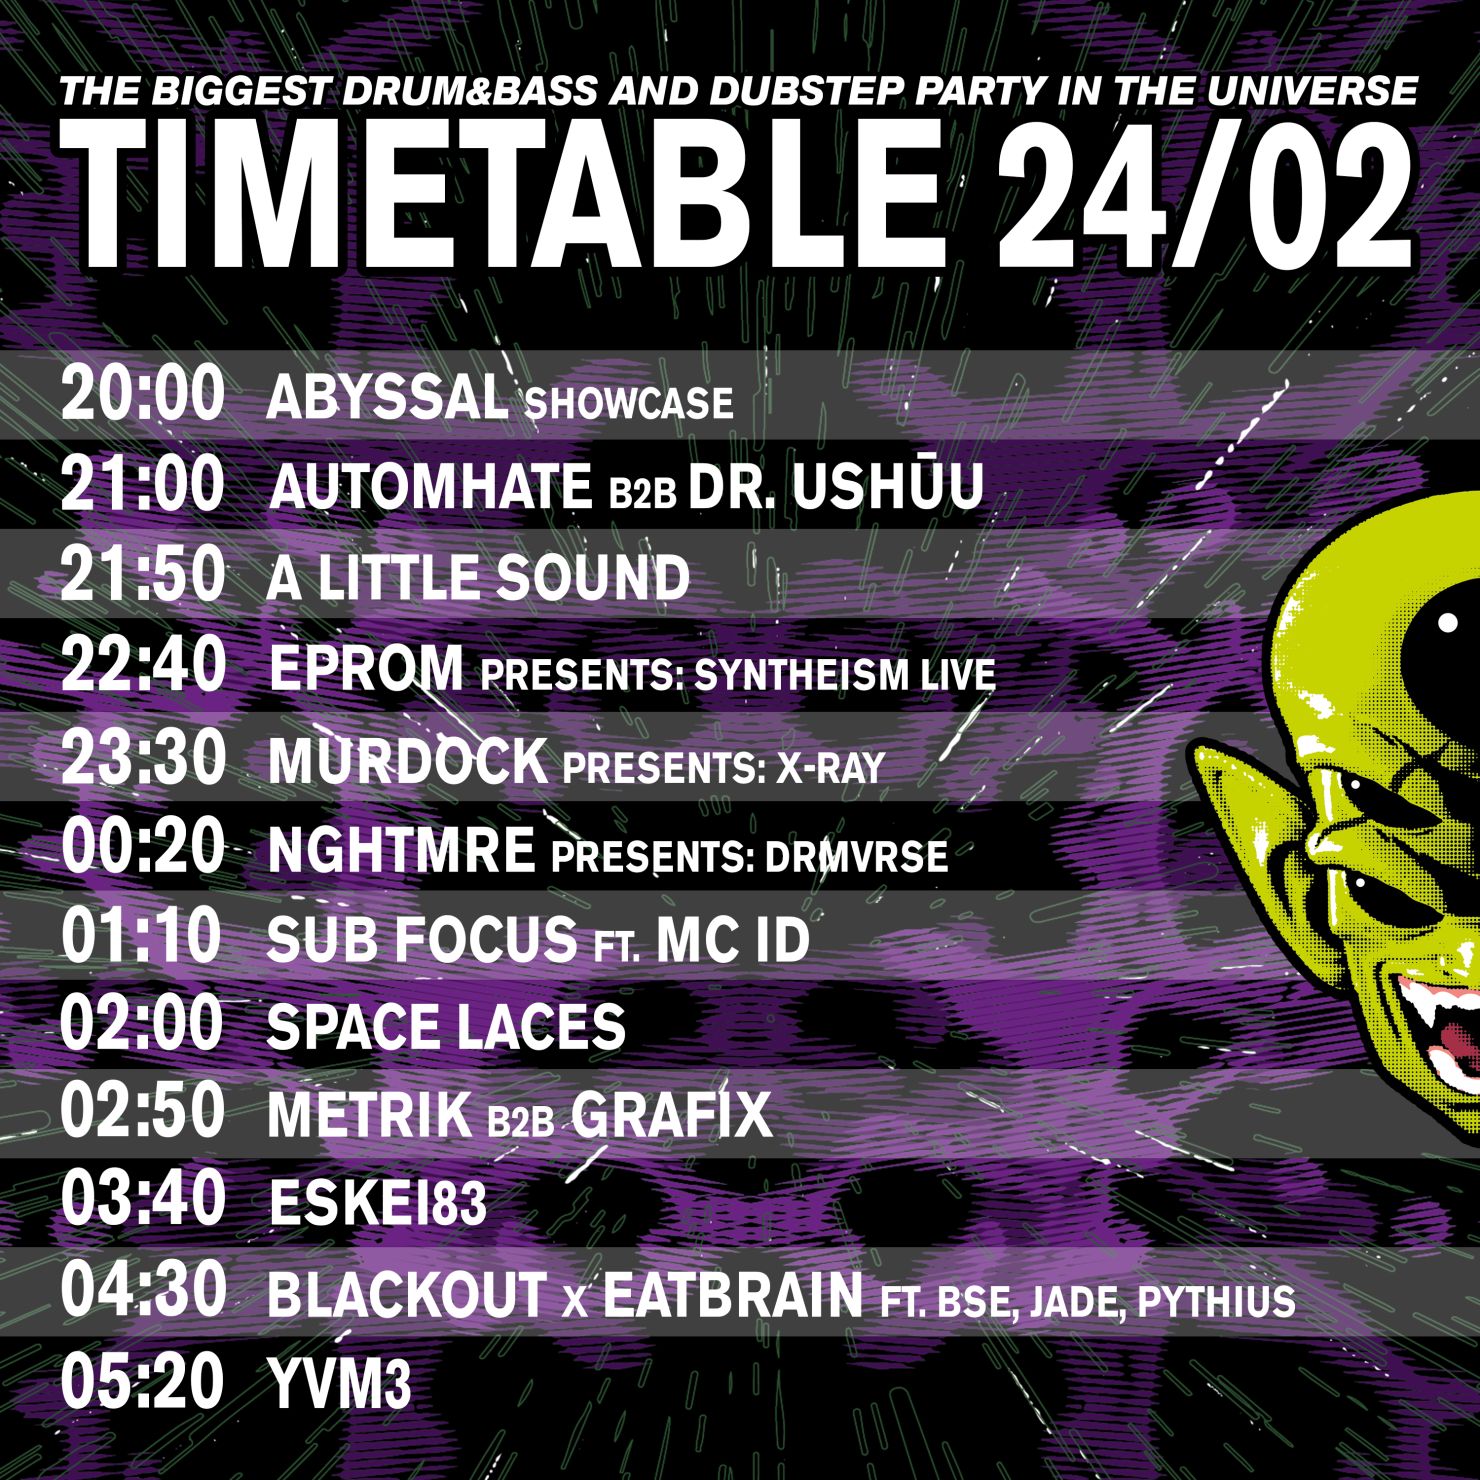 Saturday timetable 15Y